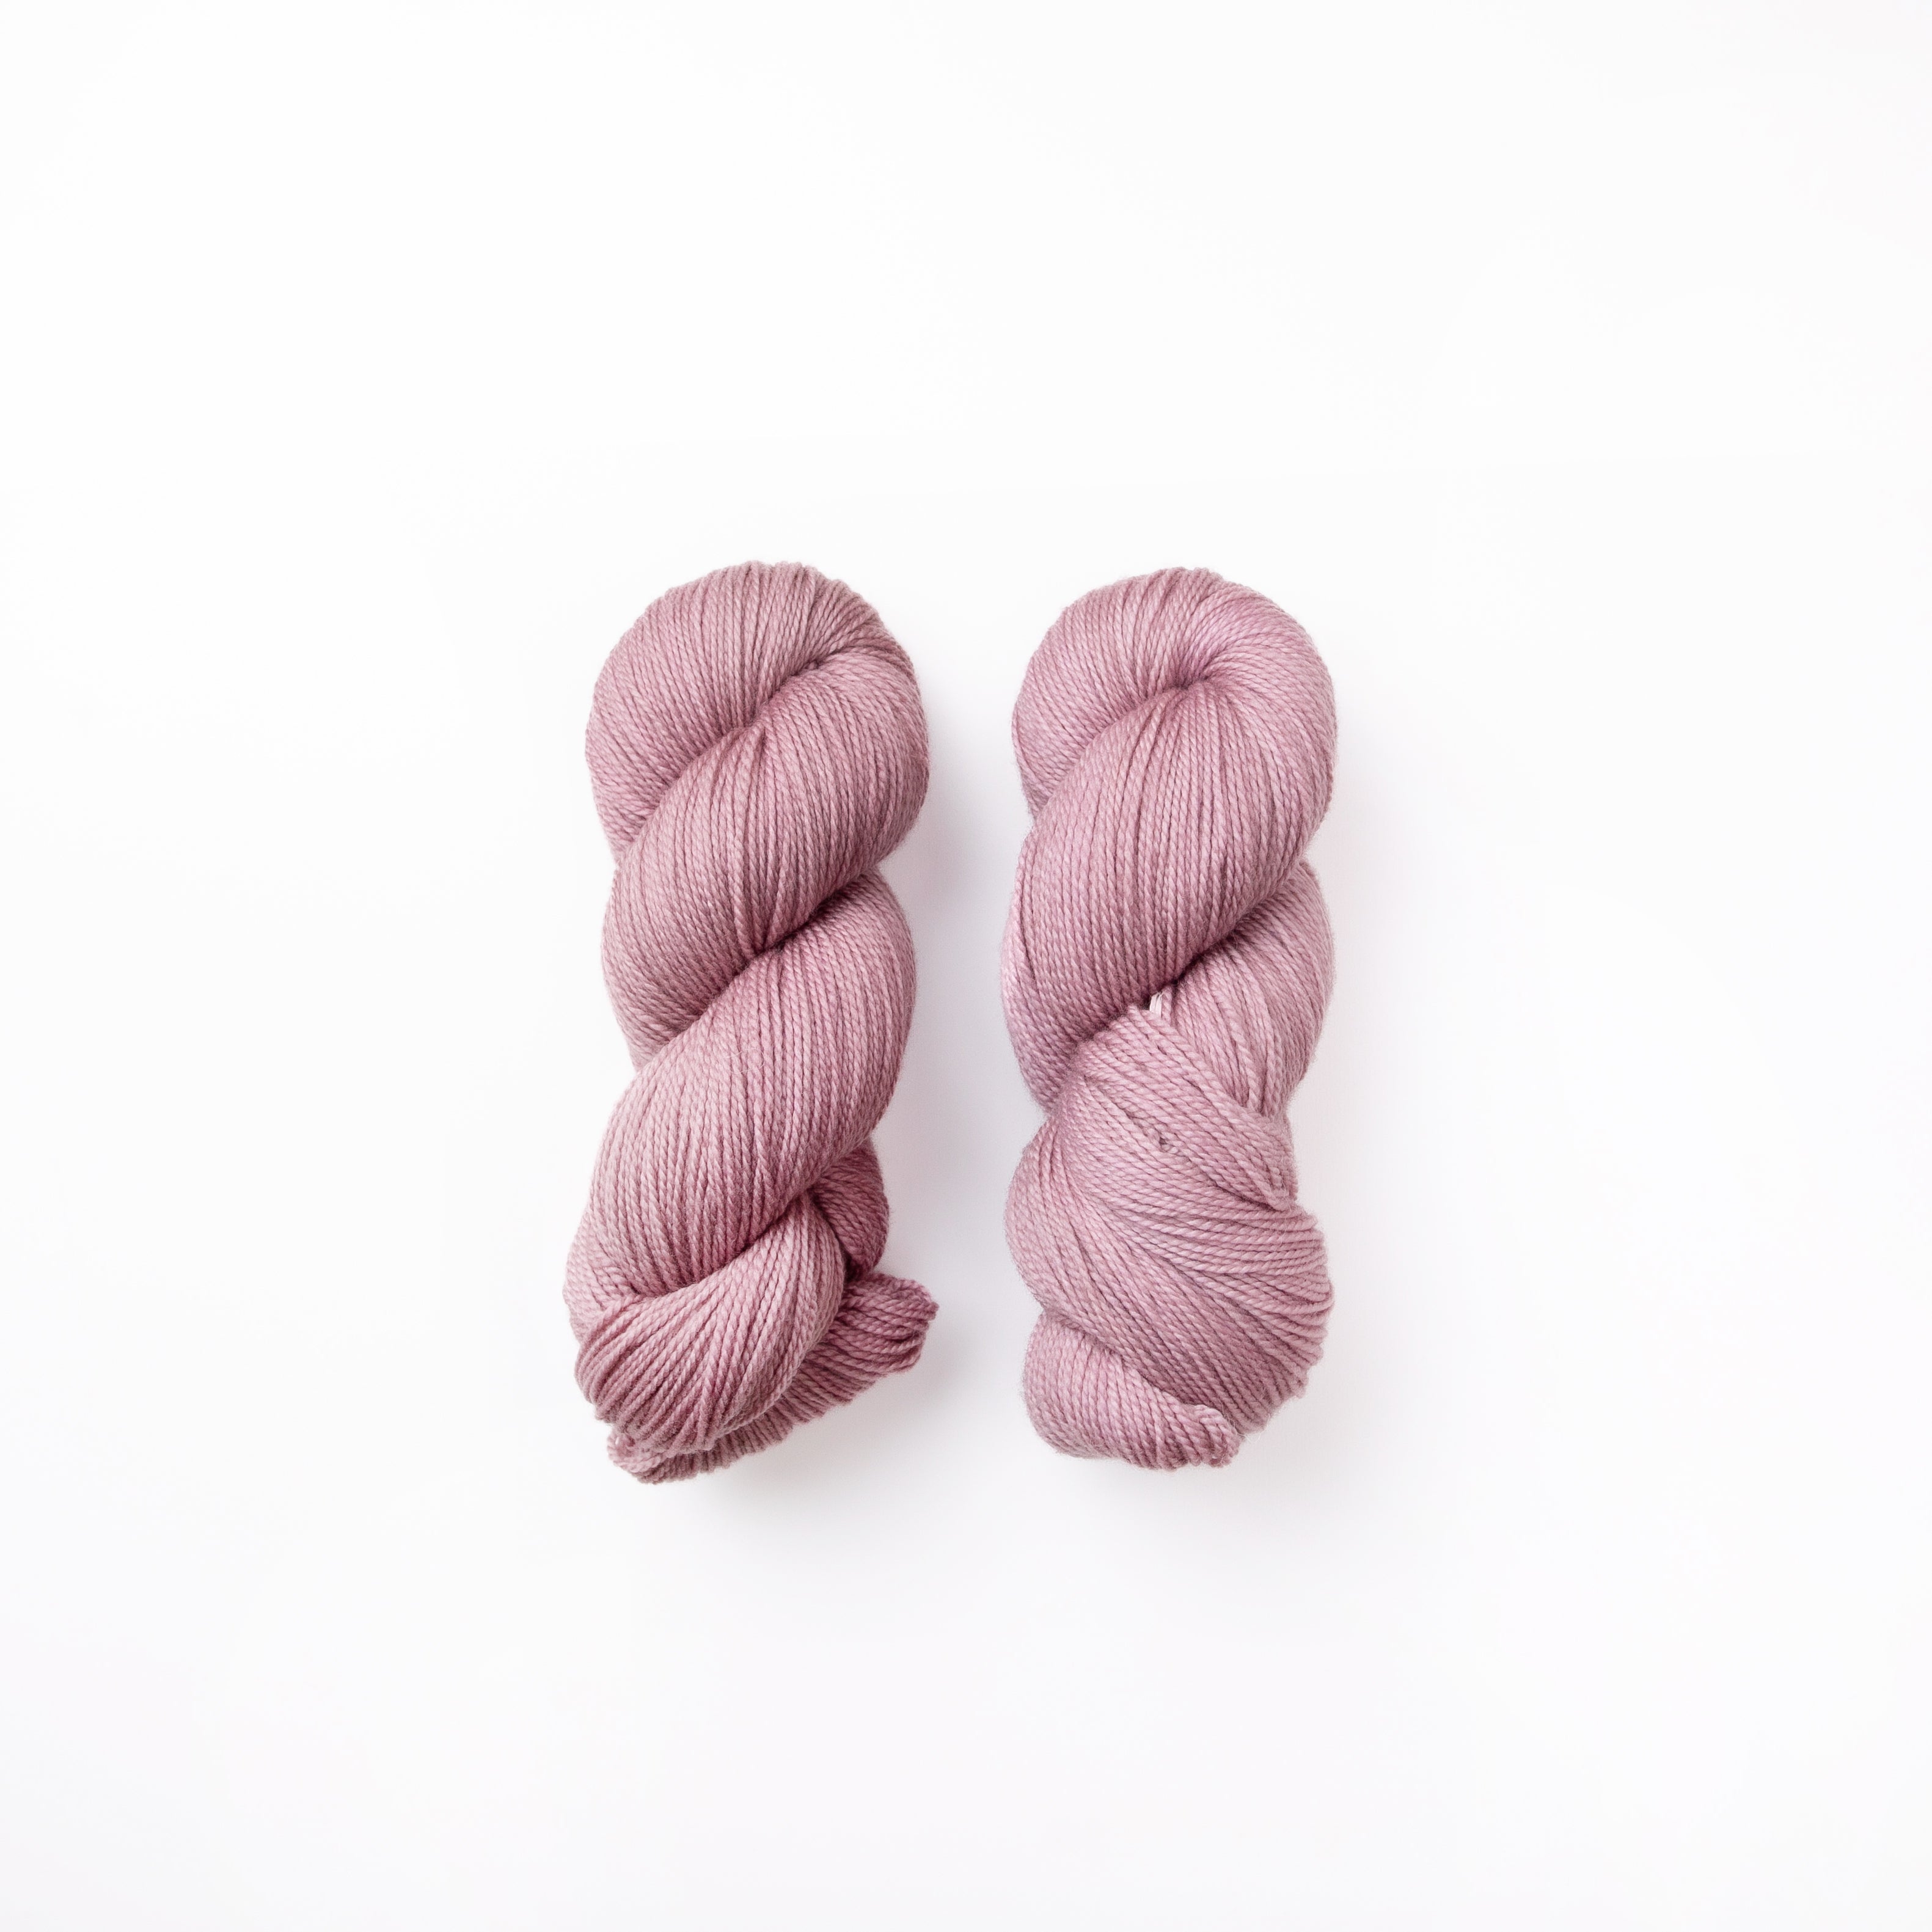 オリジナルヤーン – Bon voyage hand dyed yarn